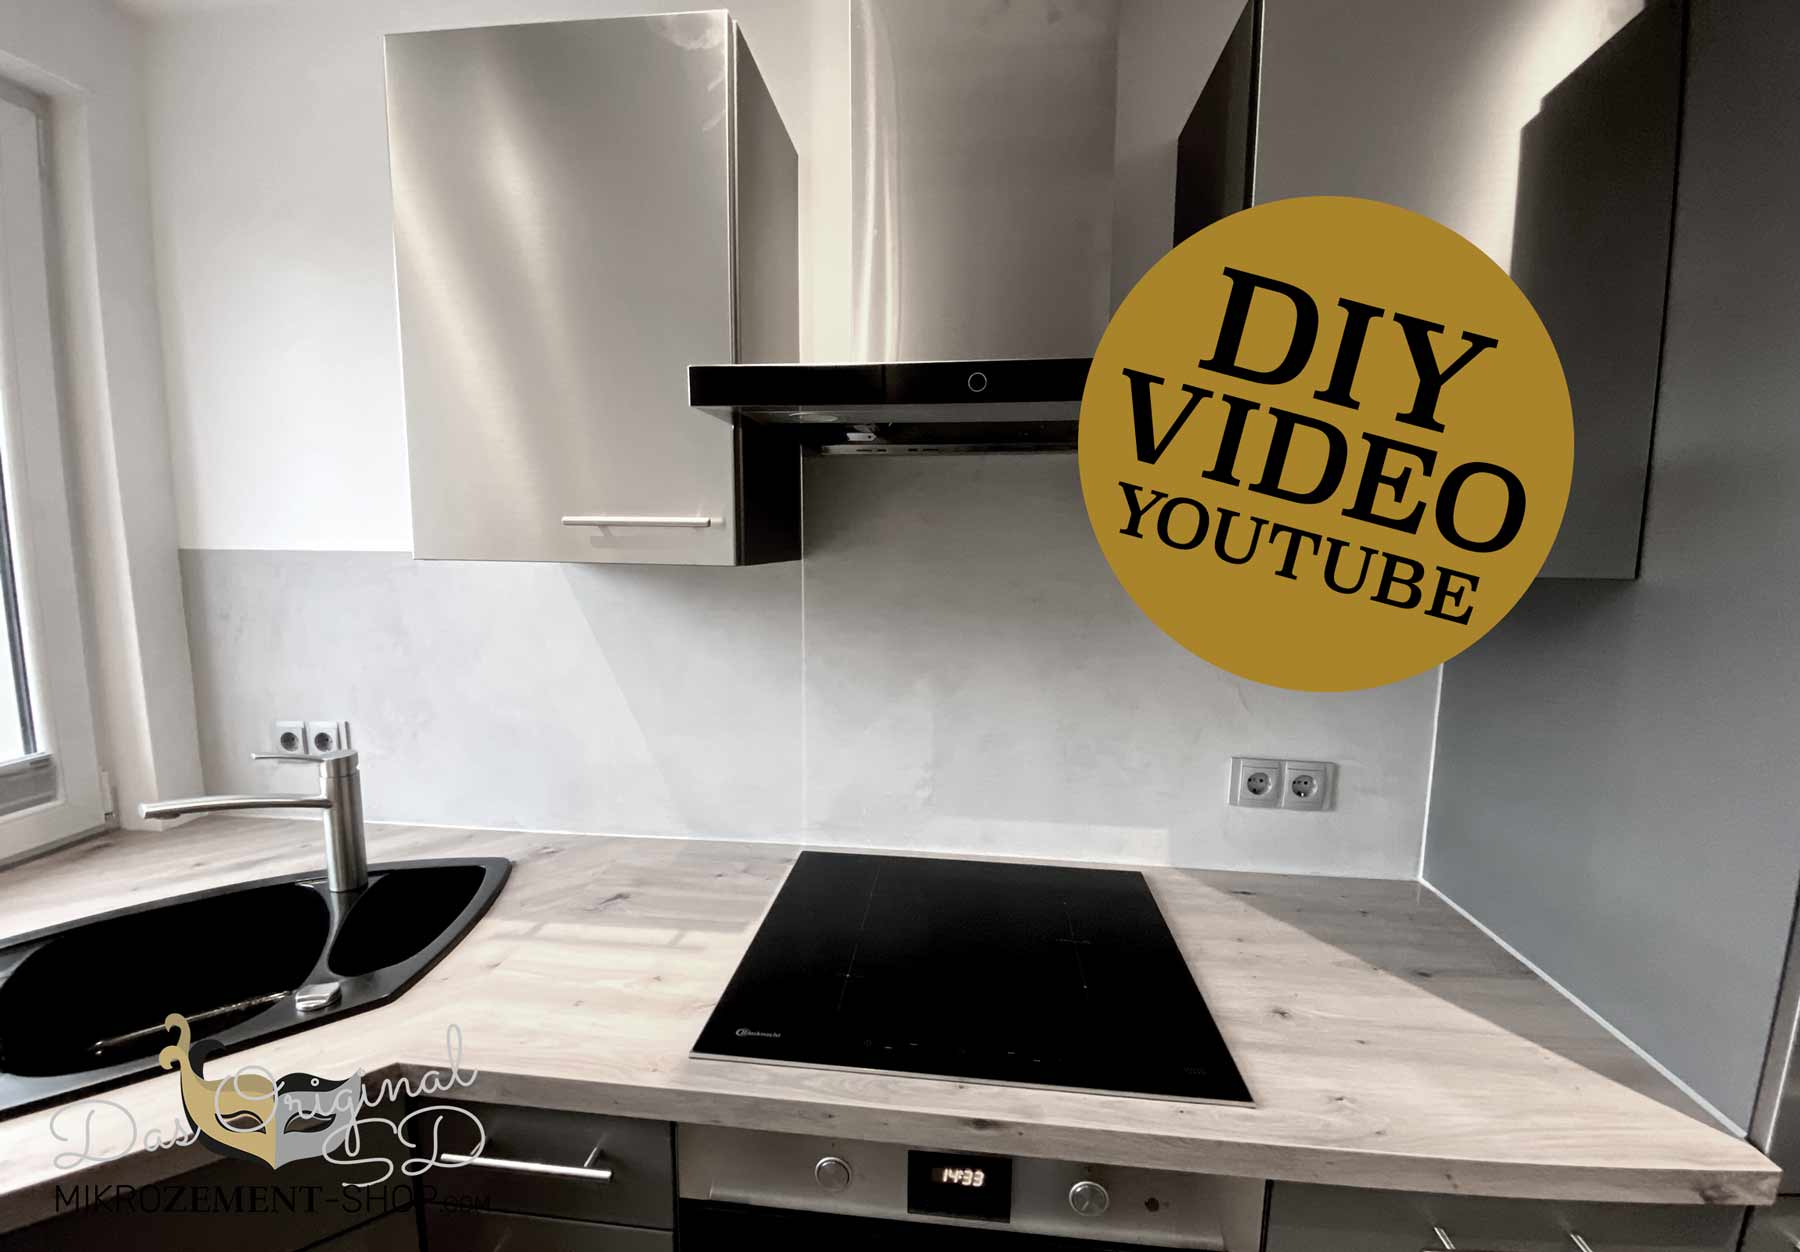 Mikozement in der Küche und DIY Video